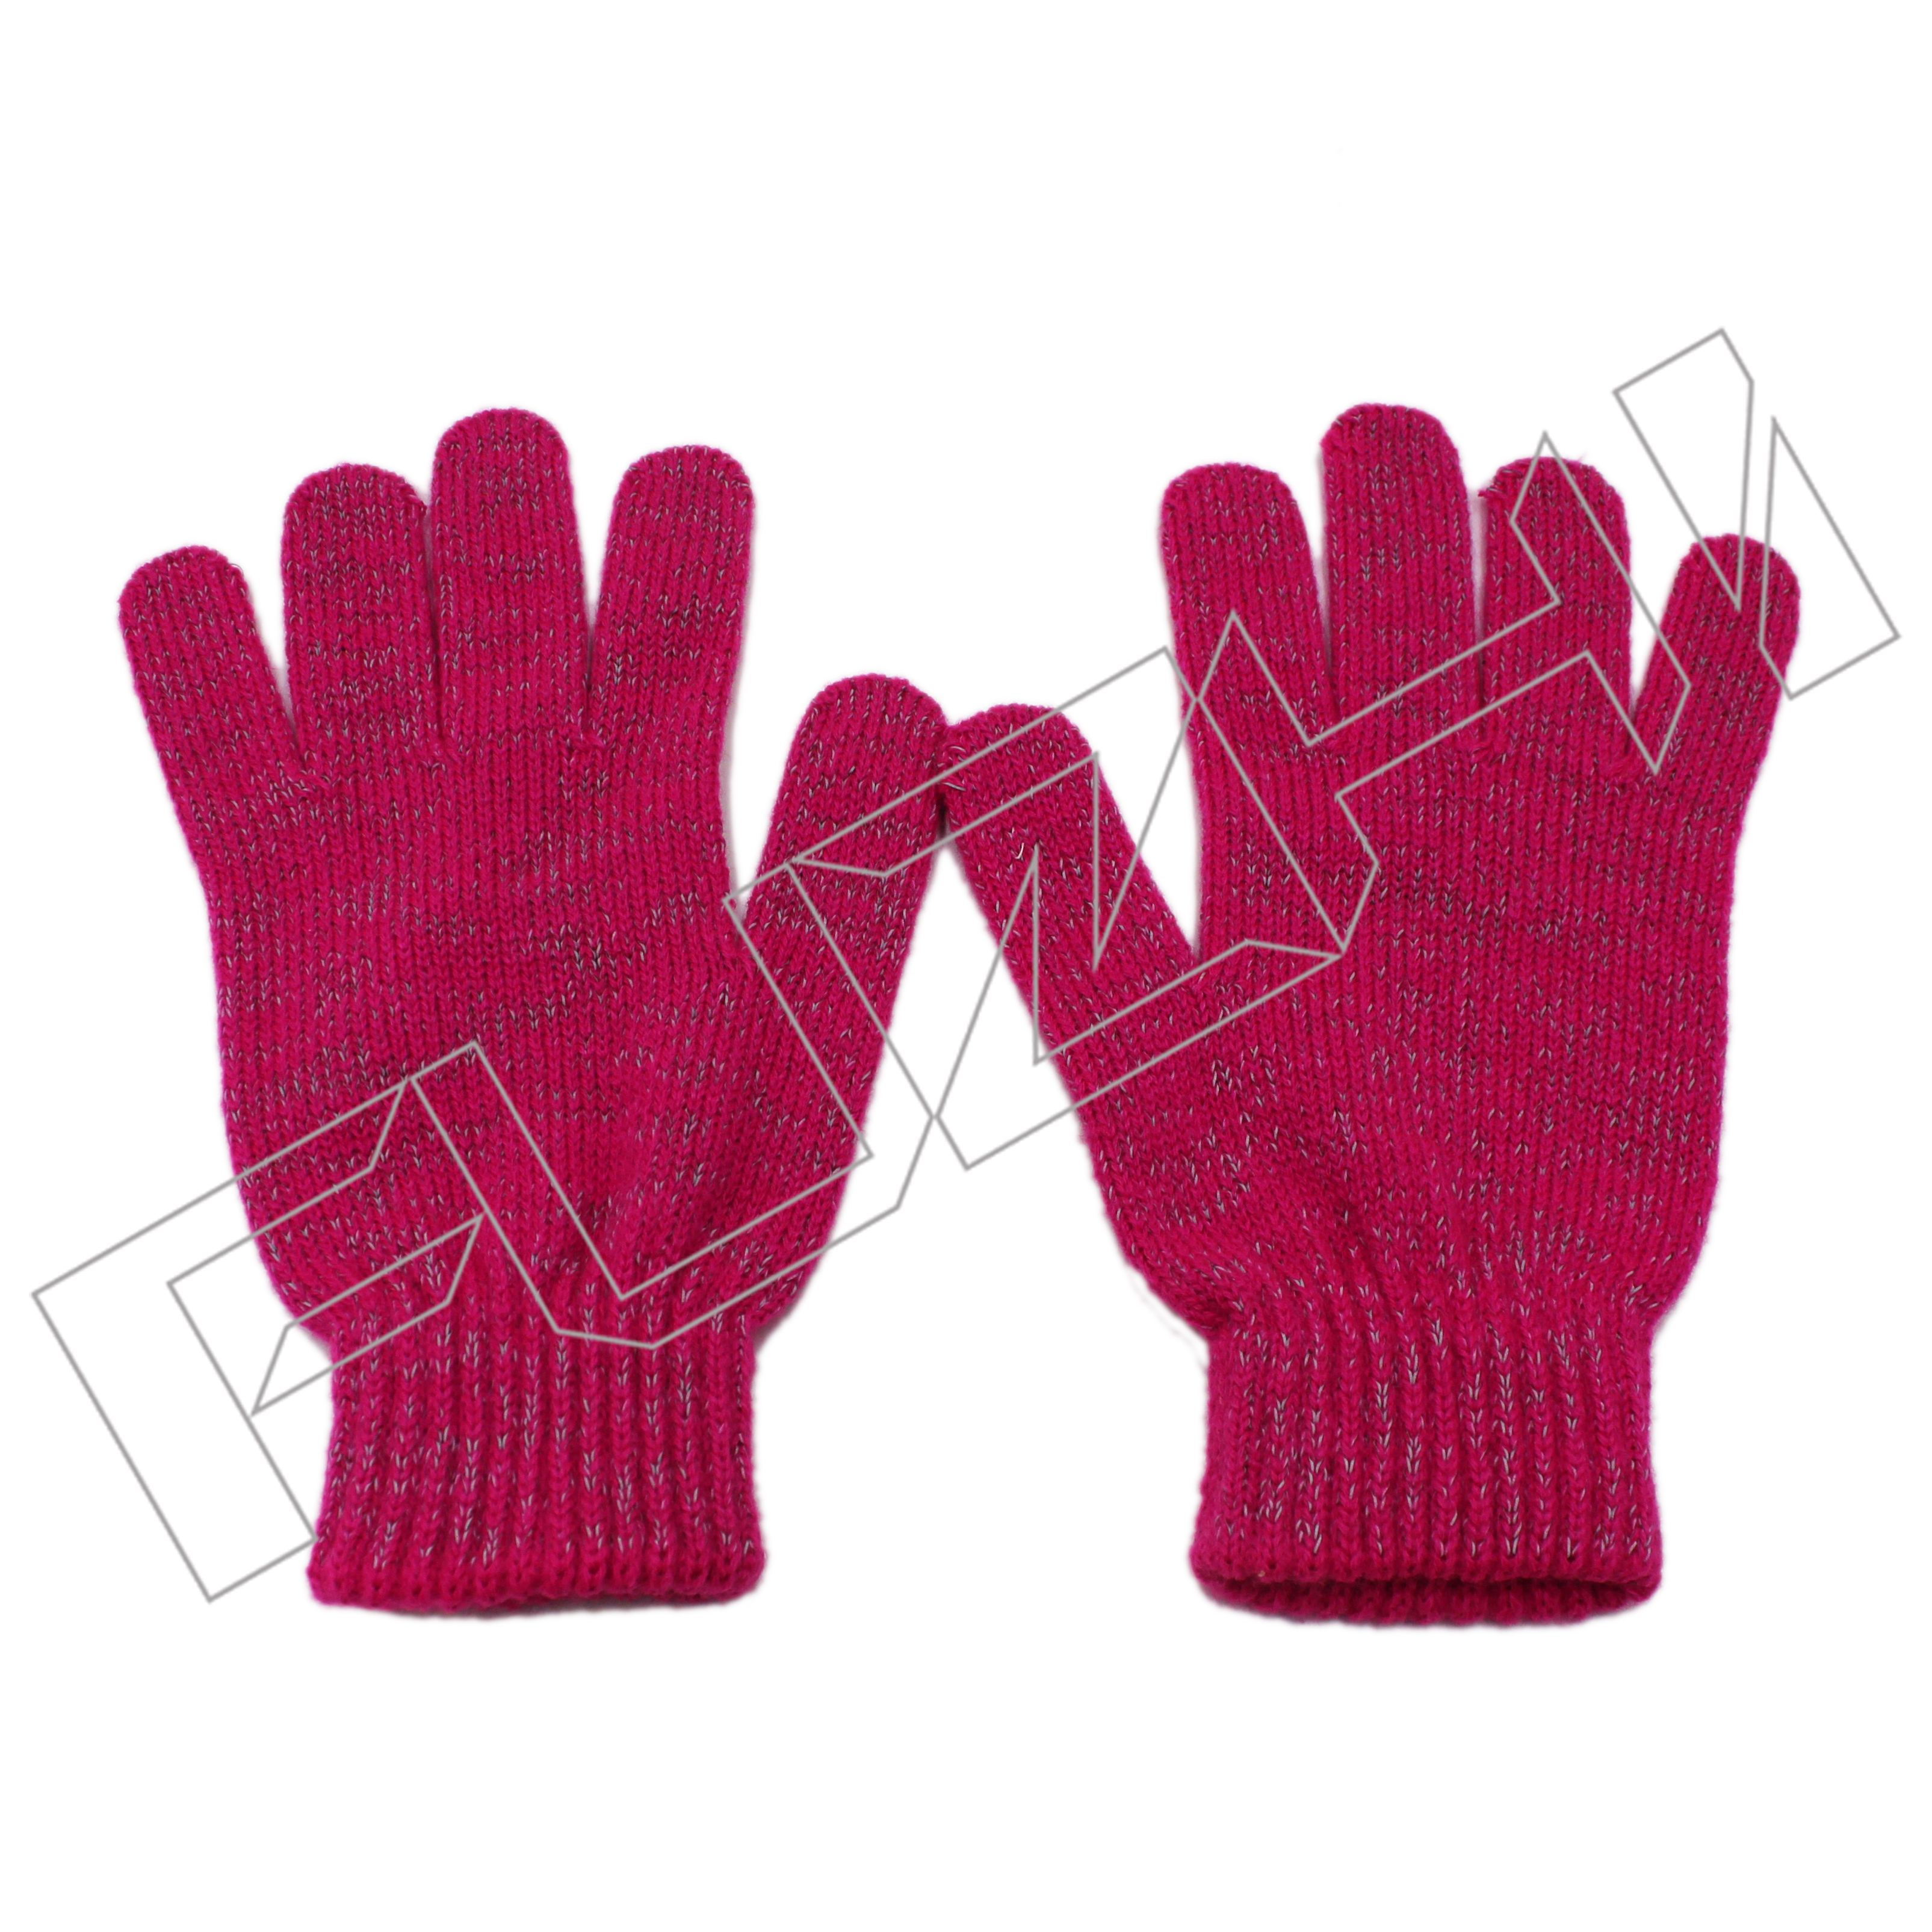 Ανακλαστικά γάντια